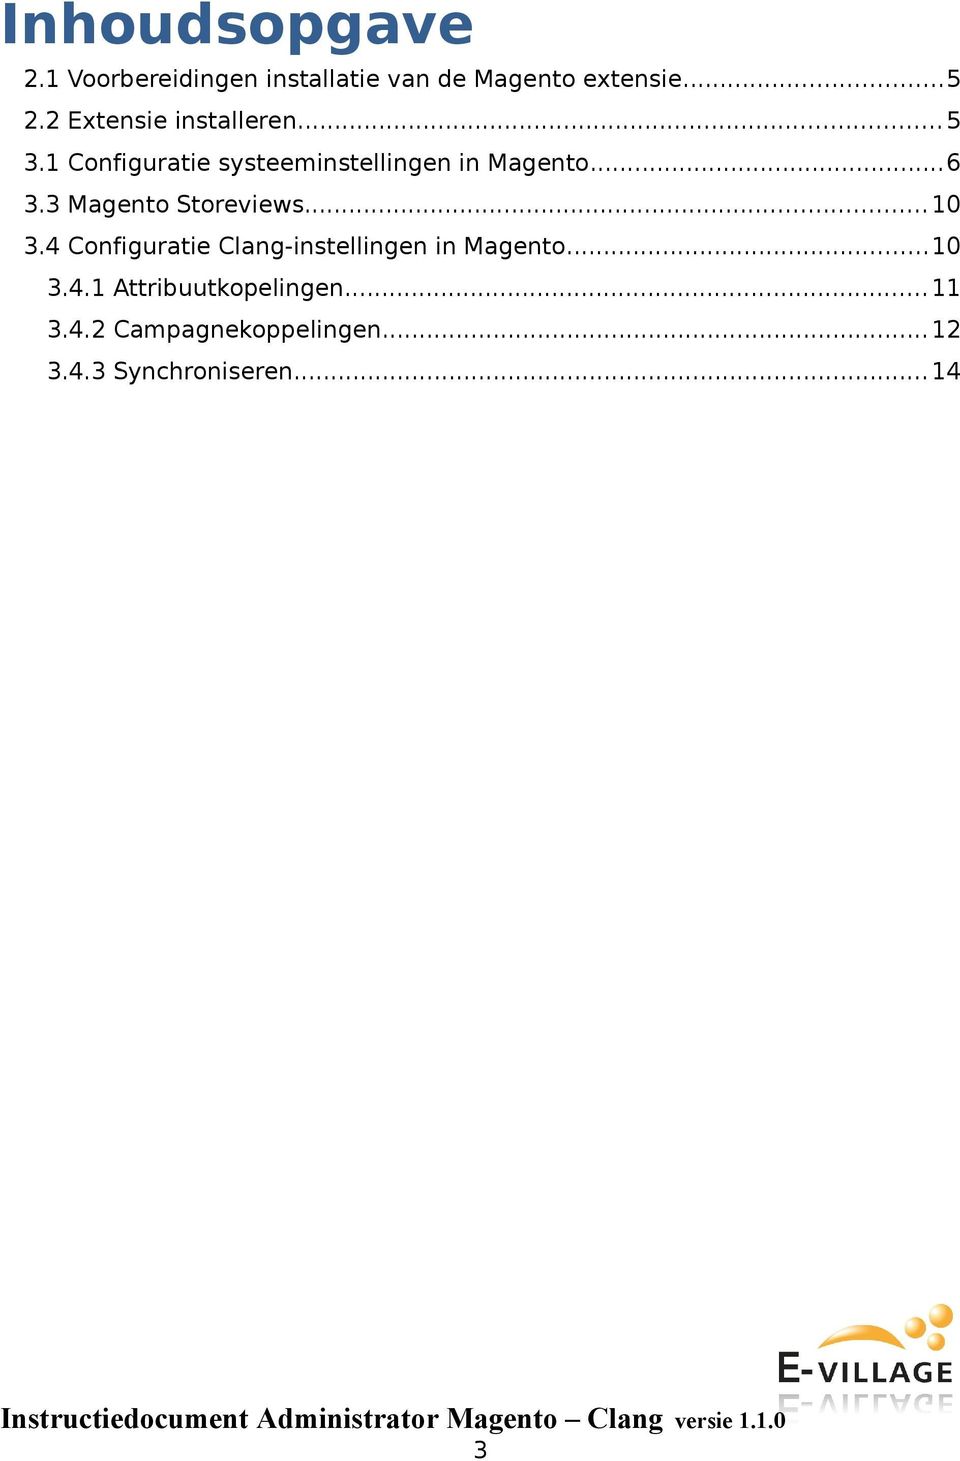 3 Magento Storeviews...10 3.4 Configuratie Clang-instellingen in Magento...10 3.4.1 Attribuutkopelingen.